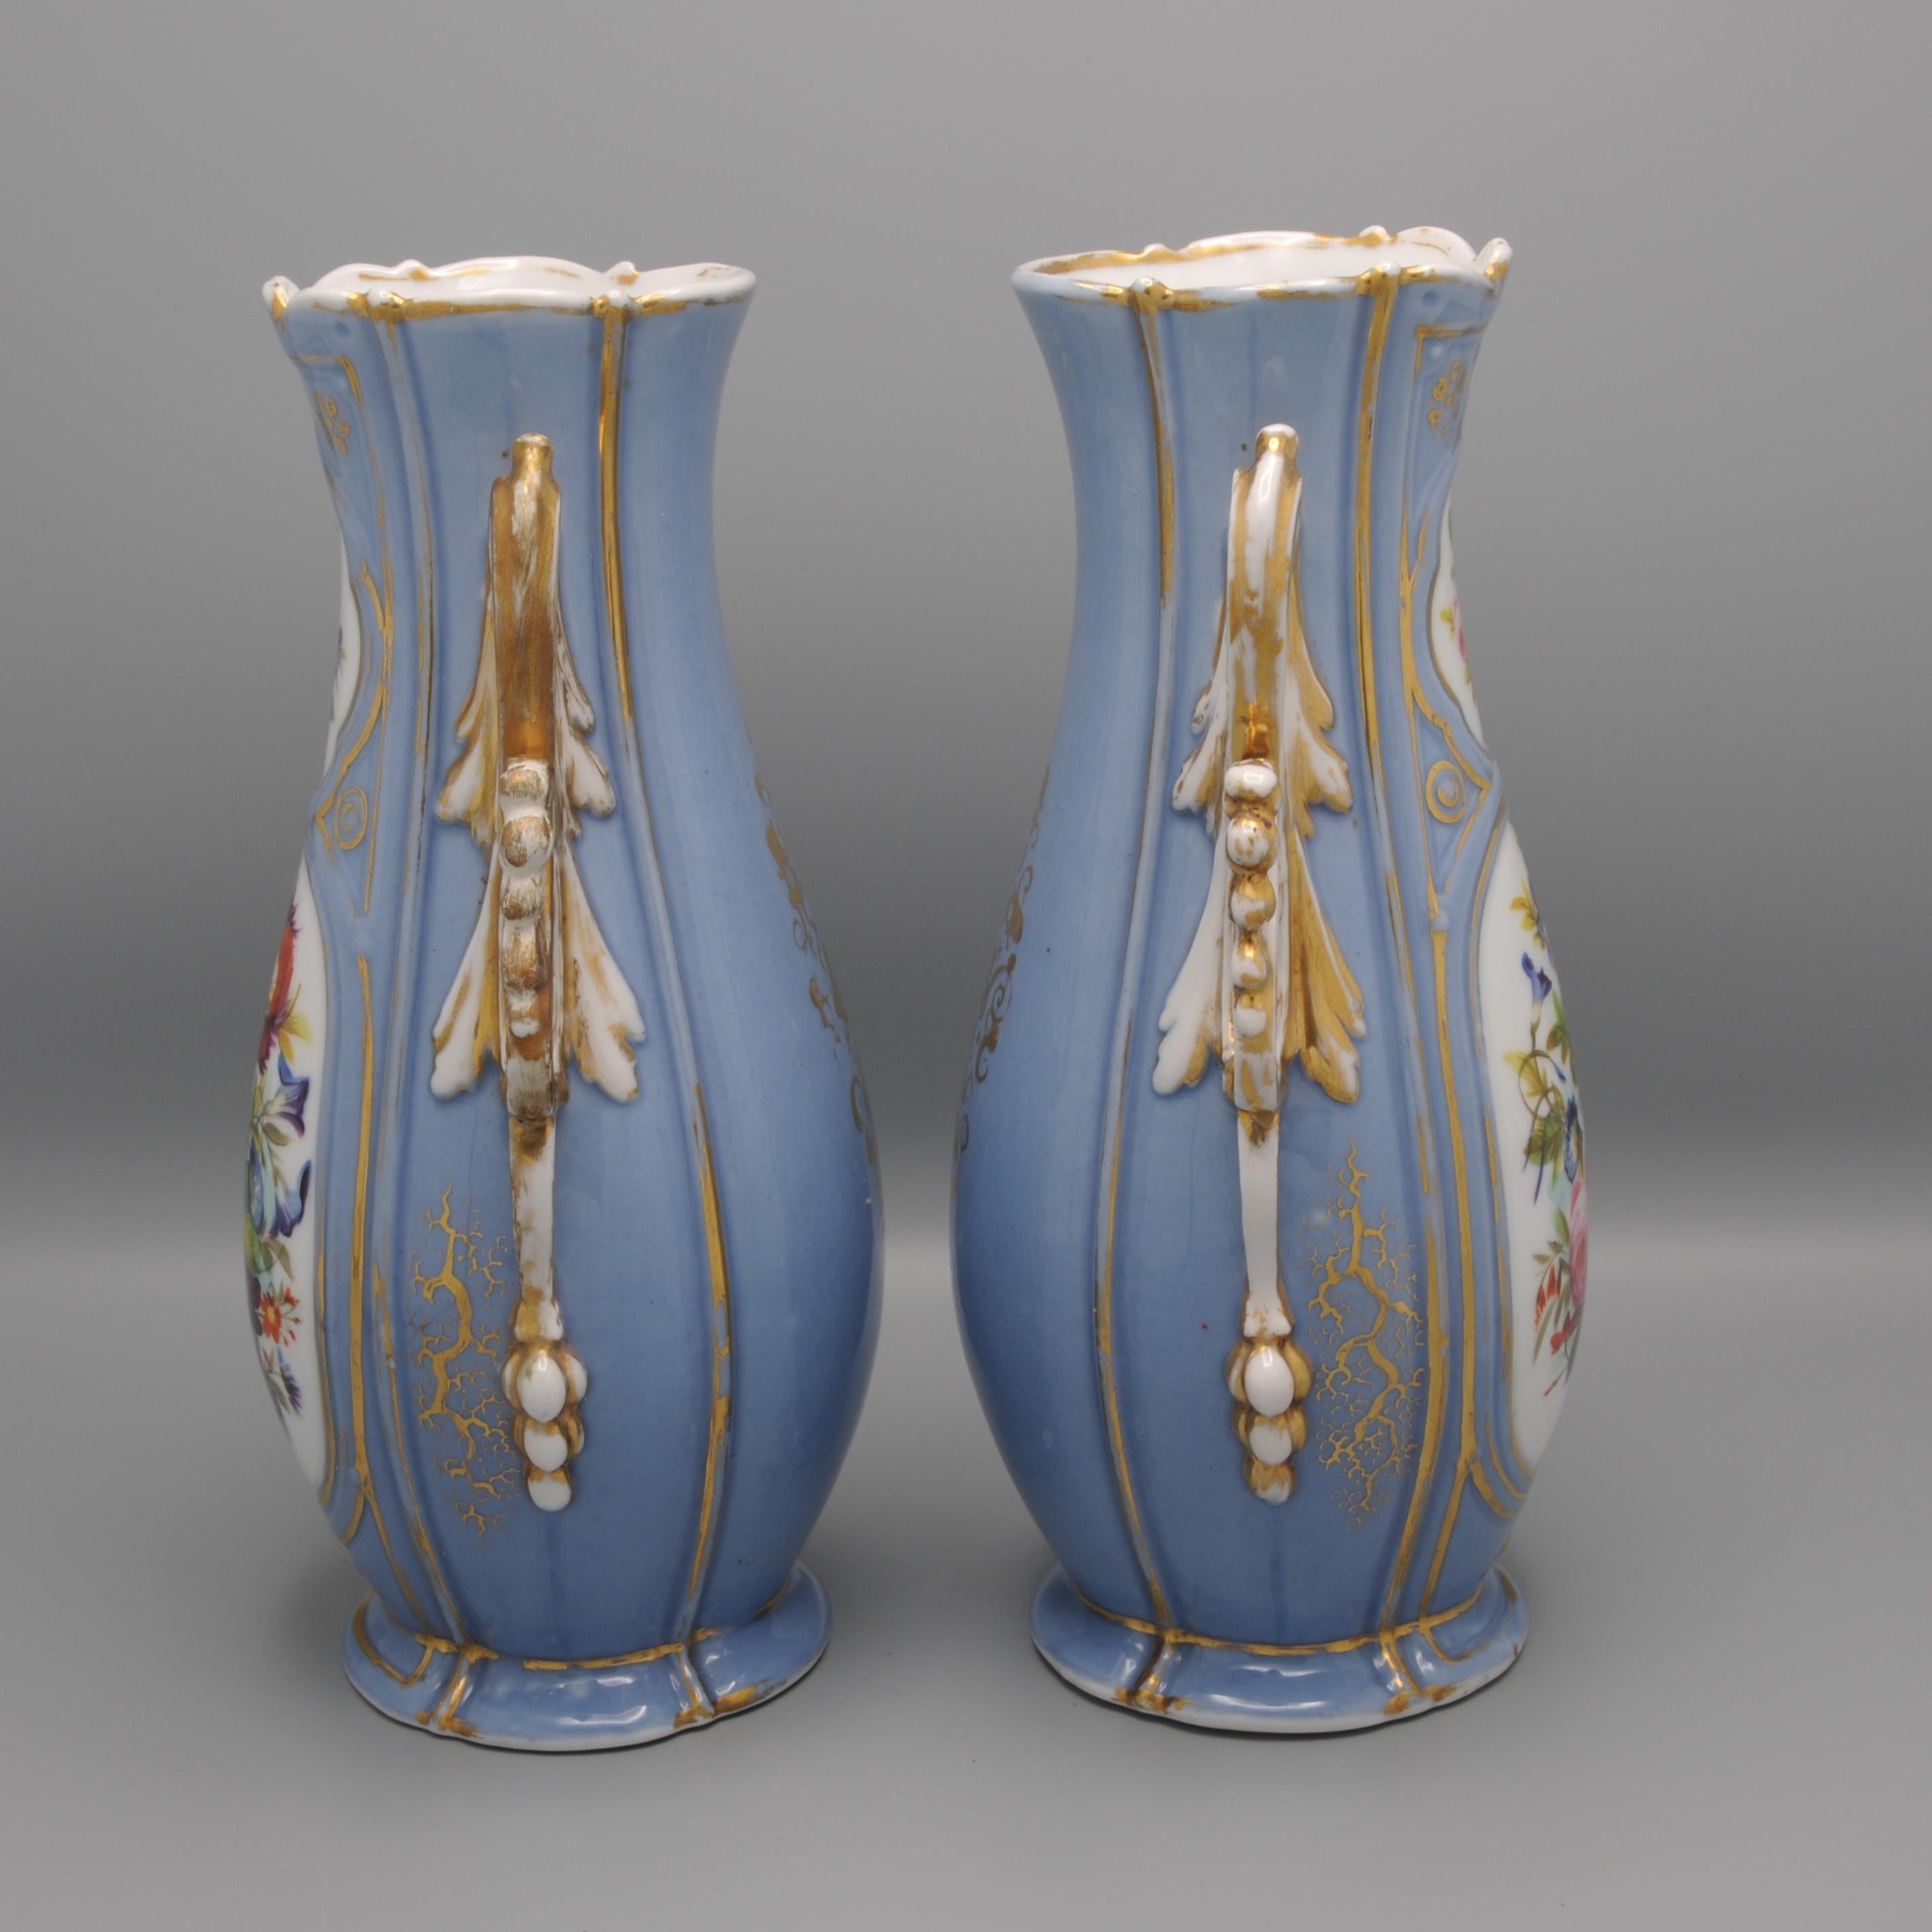 Vieux Paris / Vieux Bruxelles - Pair of Rococo Revival Vases For Sale 1